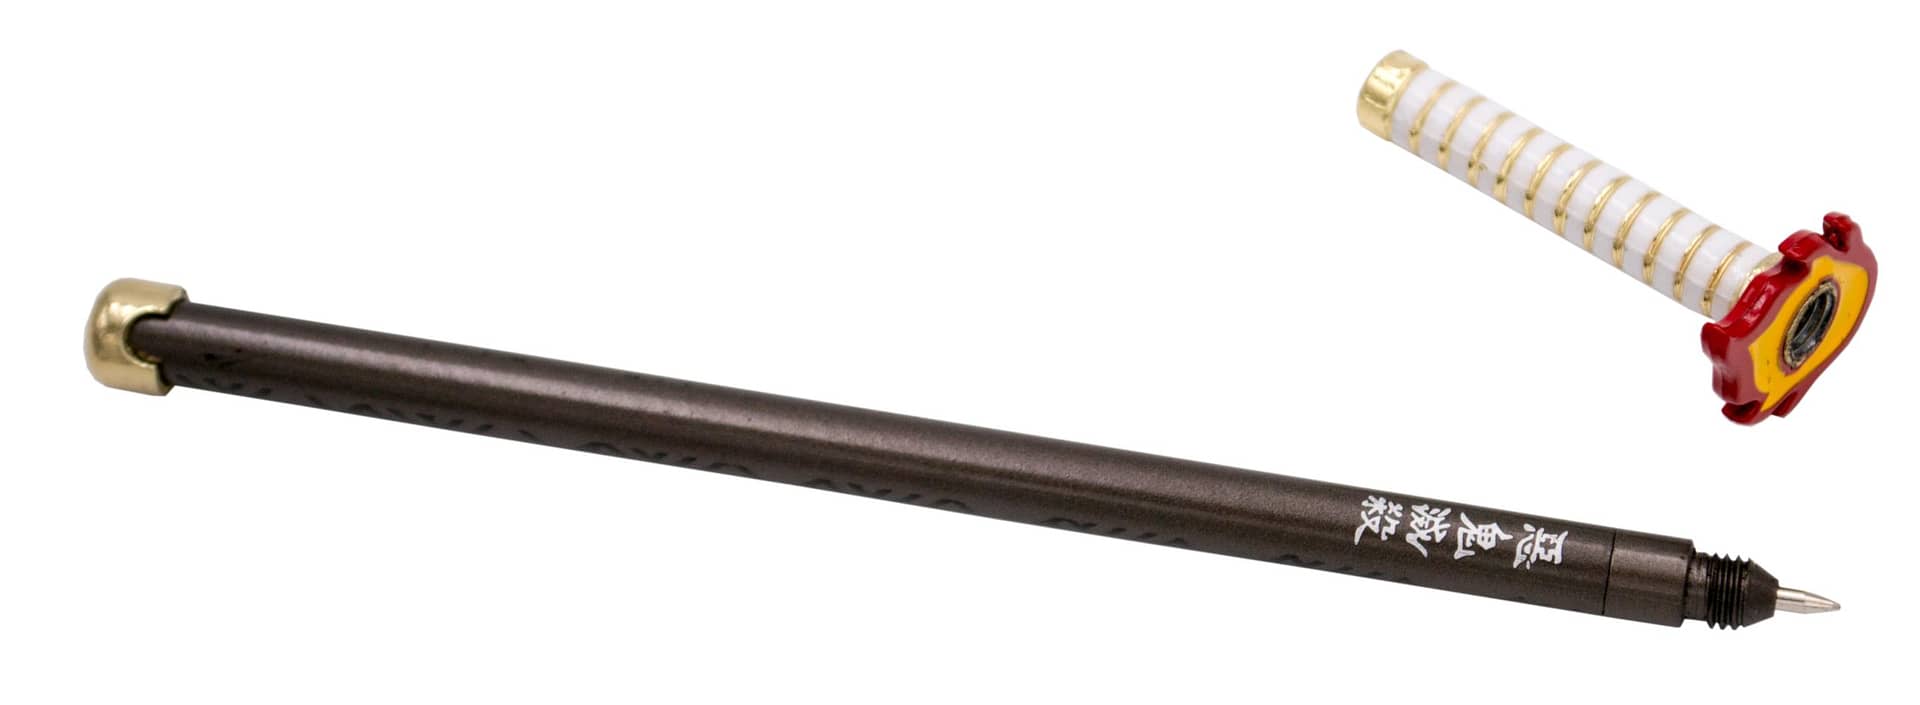 Boligrafo katana de Rengoku Kyoujurou A11766 - Espadas y Más